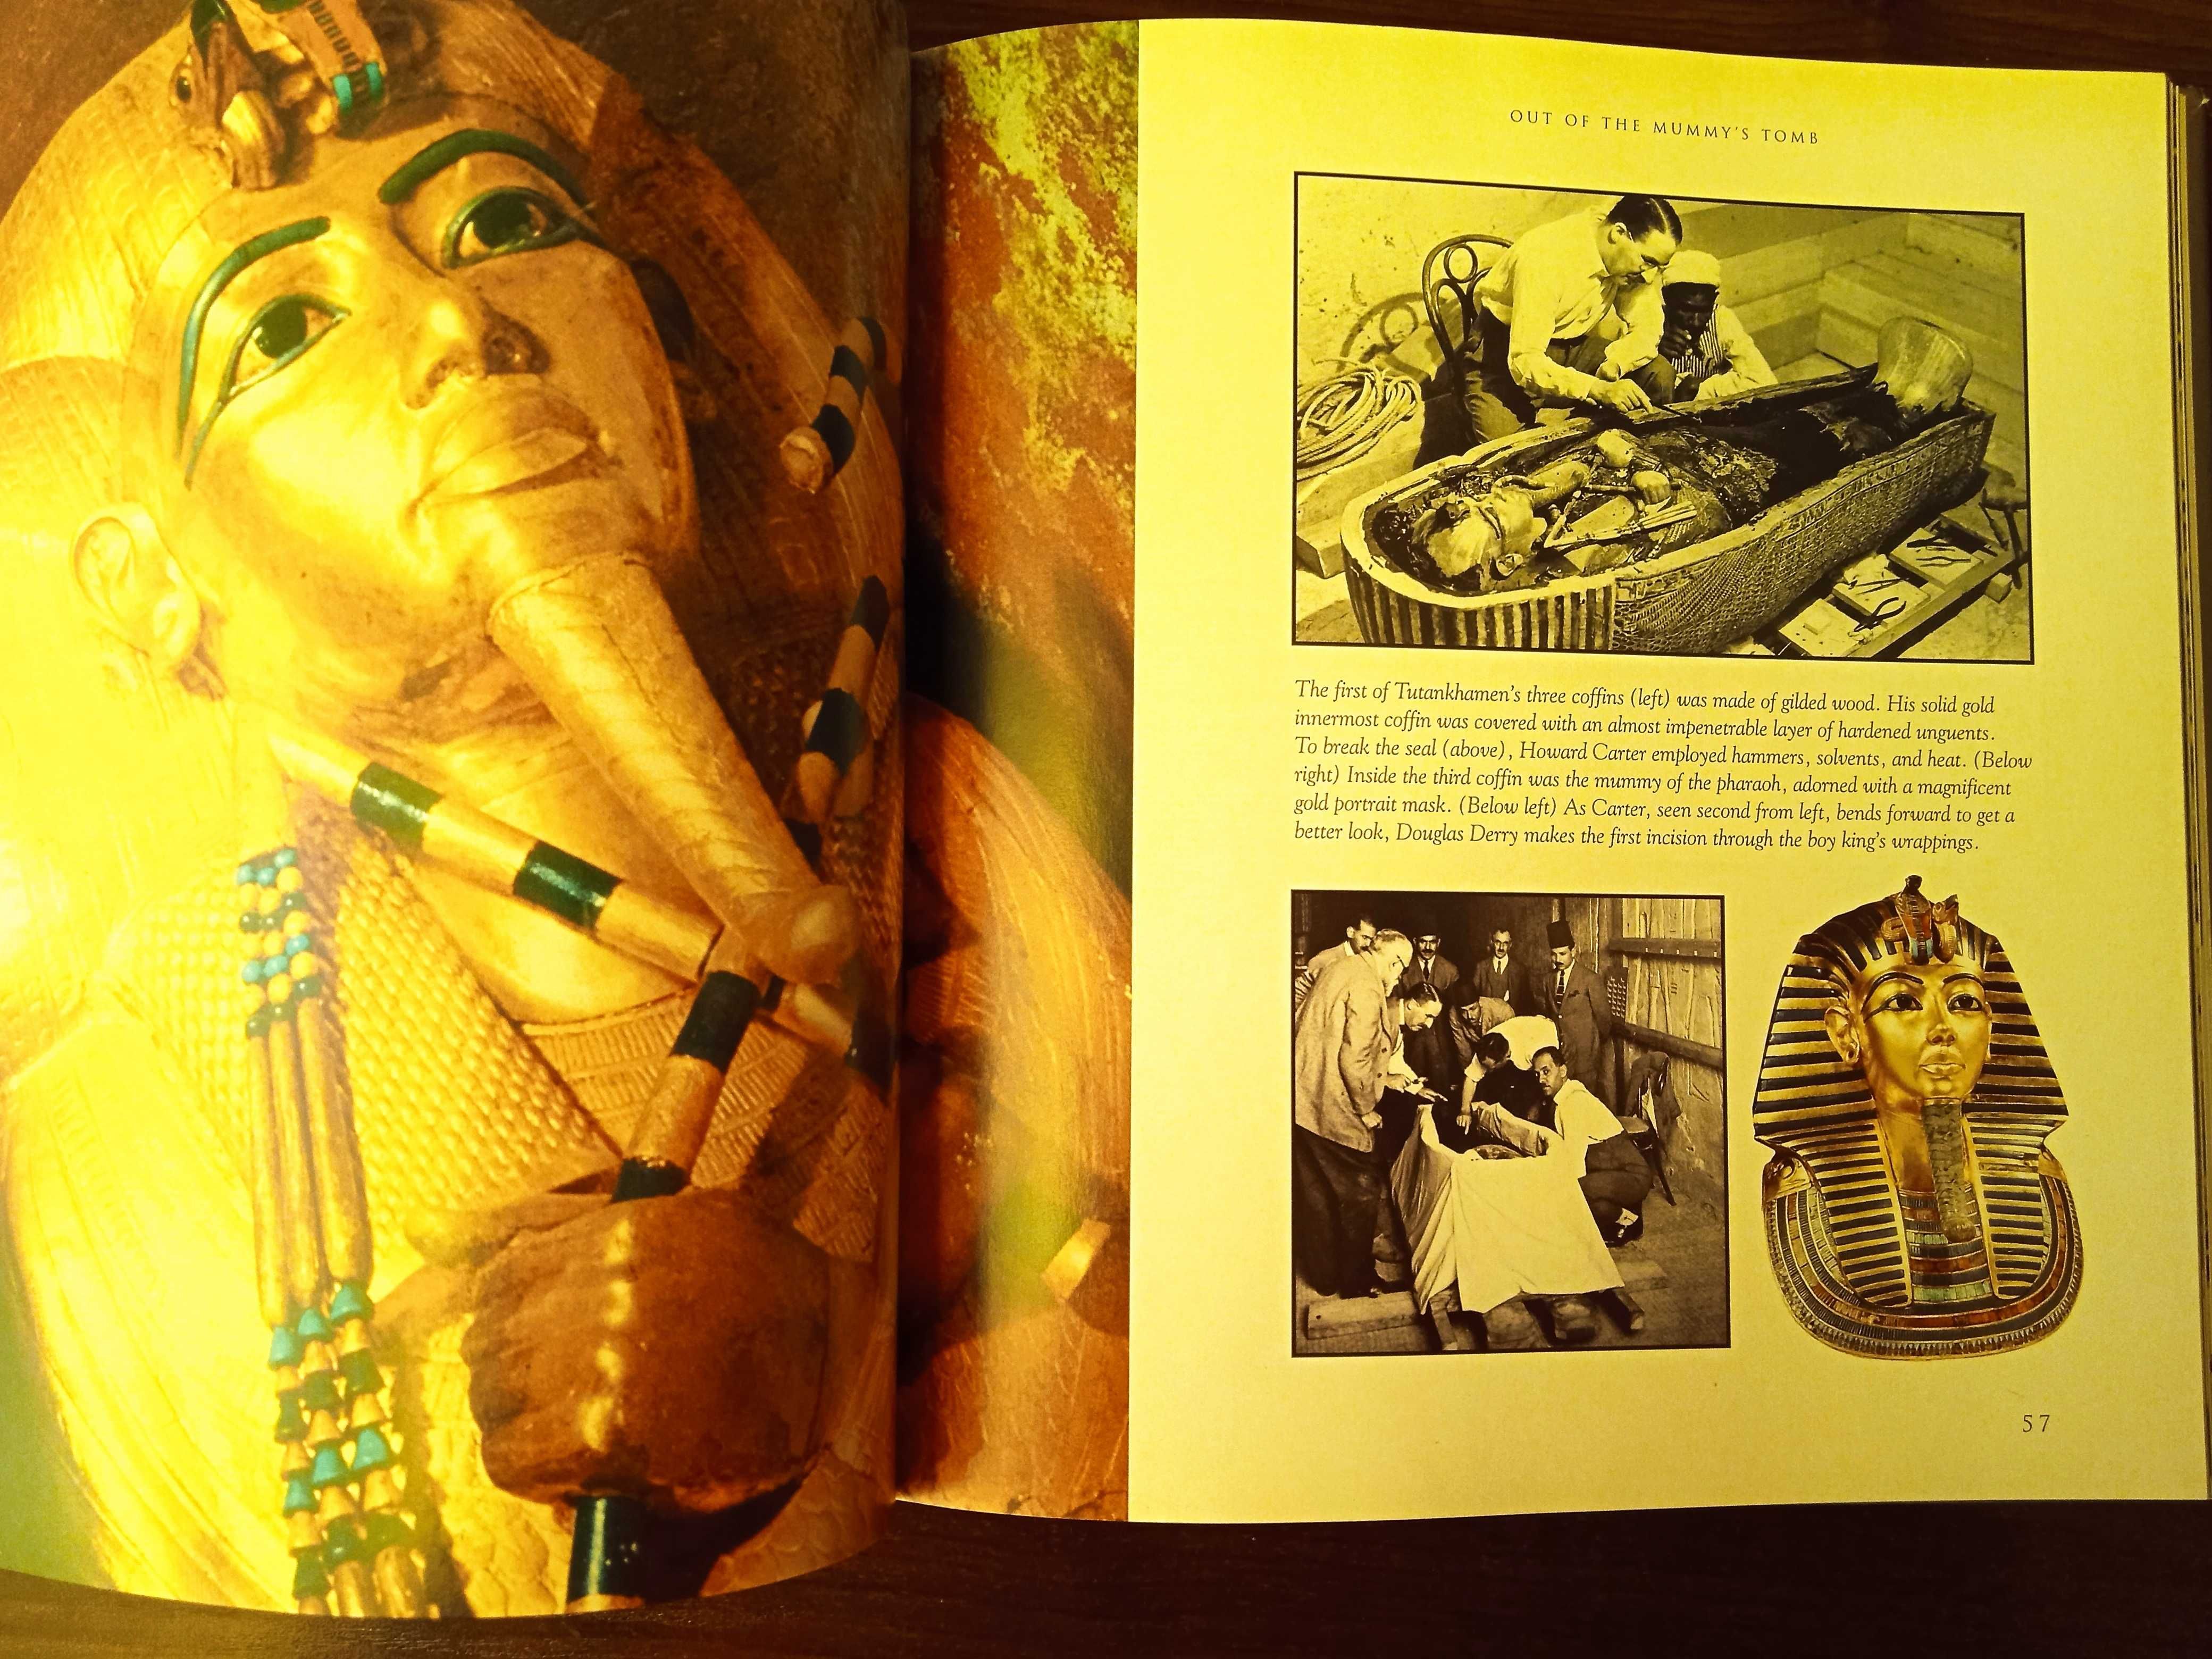 Єгиптологія - Розмови з муміями